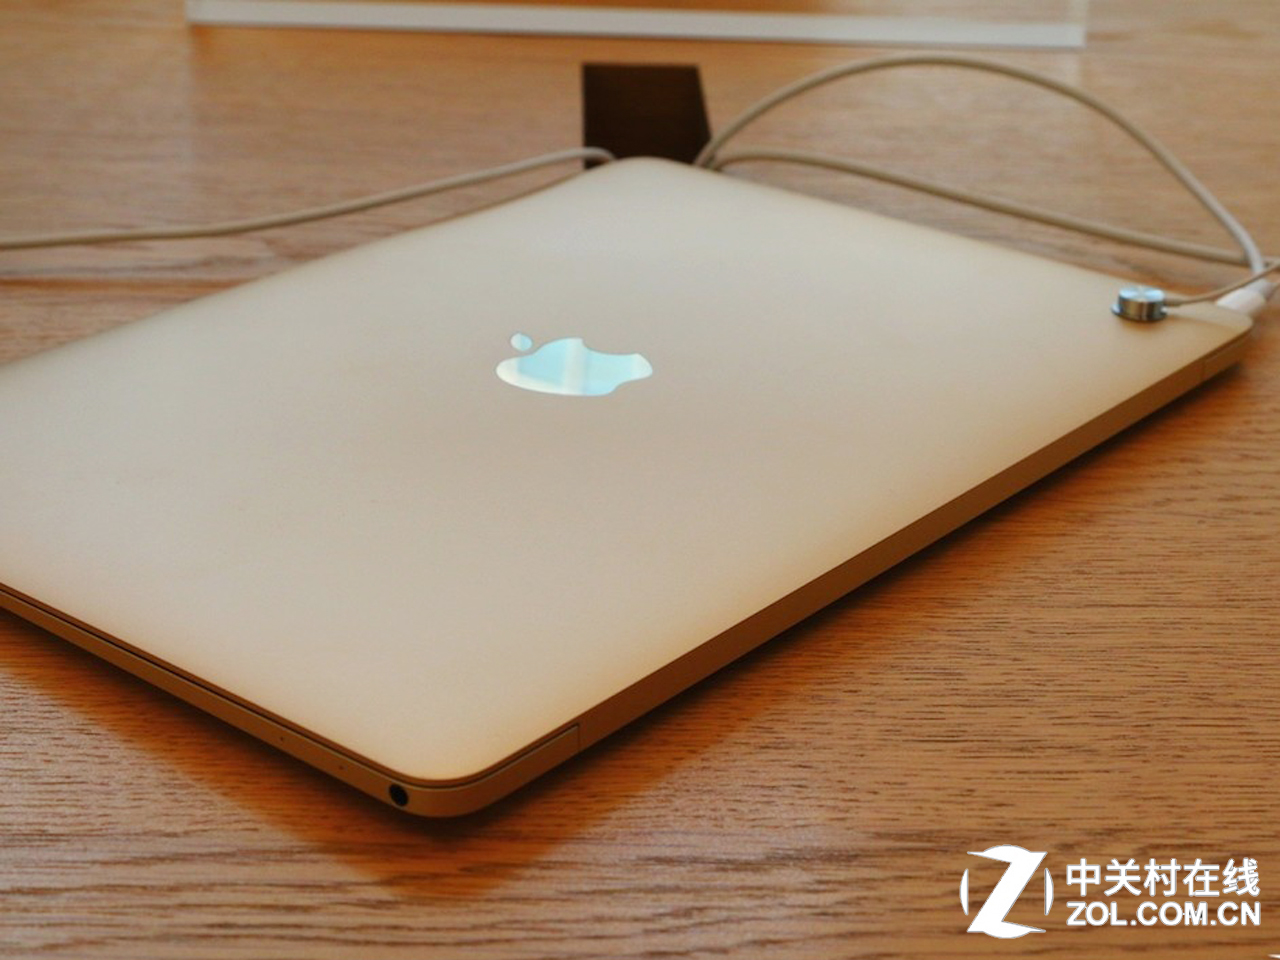 蘋果筆記本電腦超薄款是不是macbook？